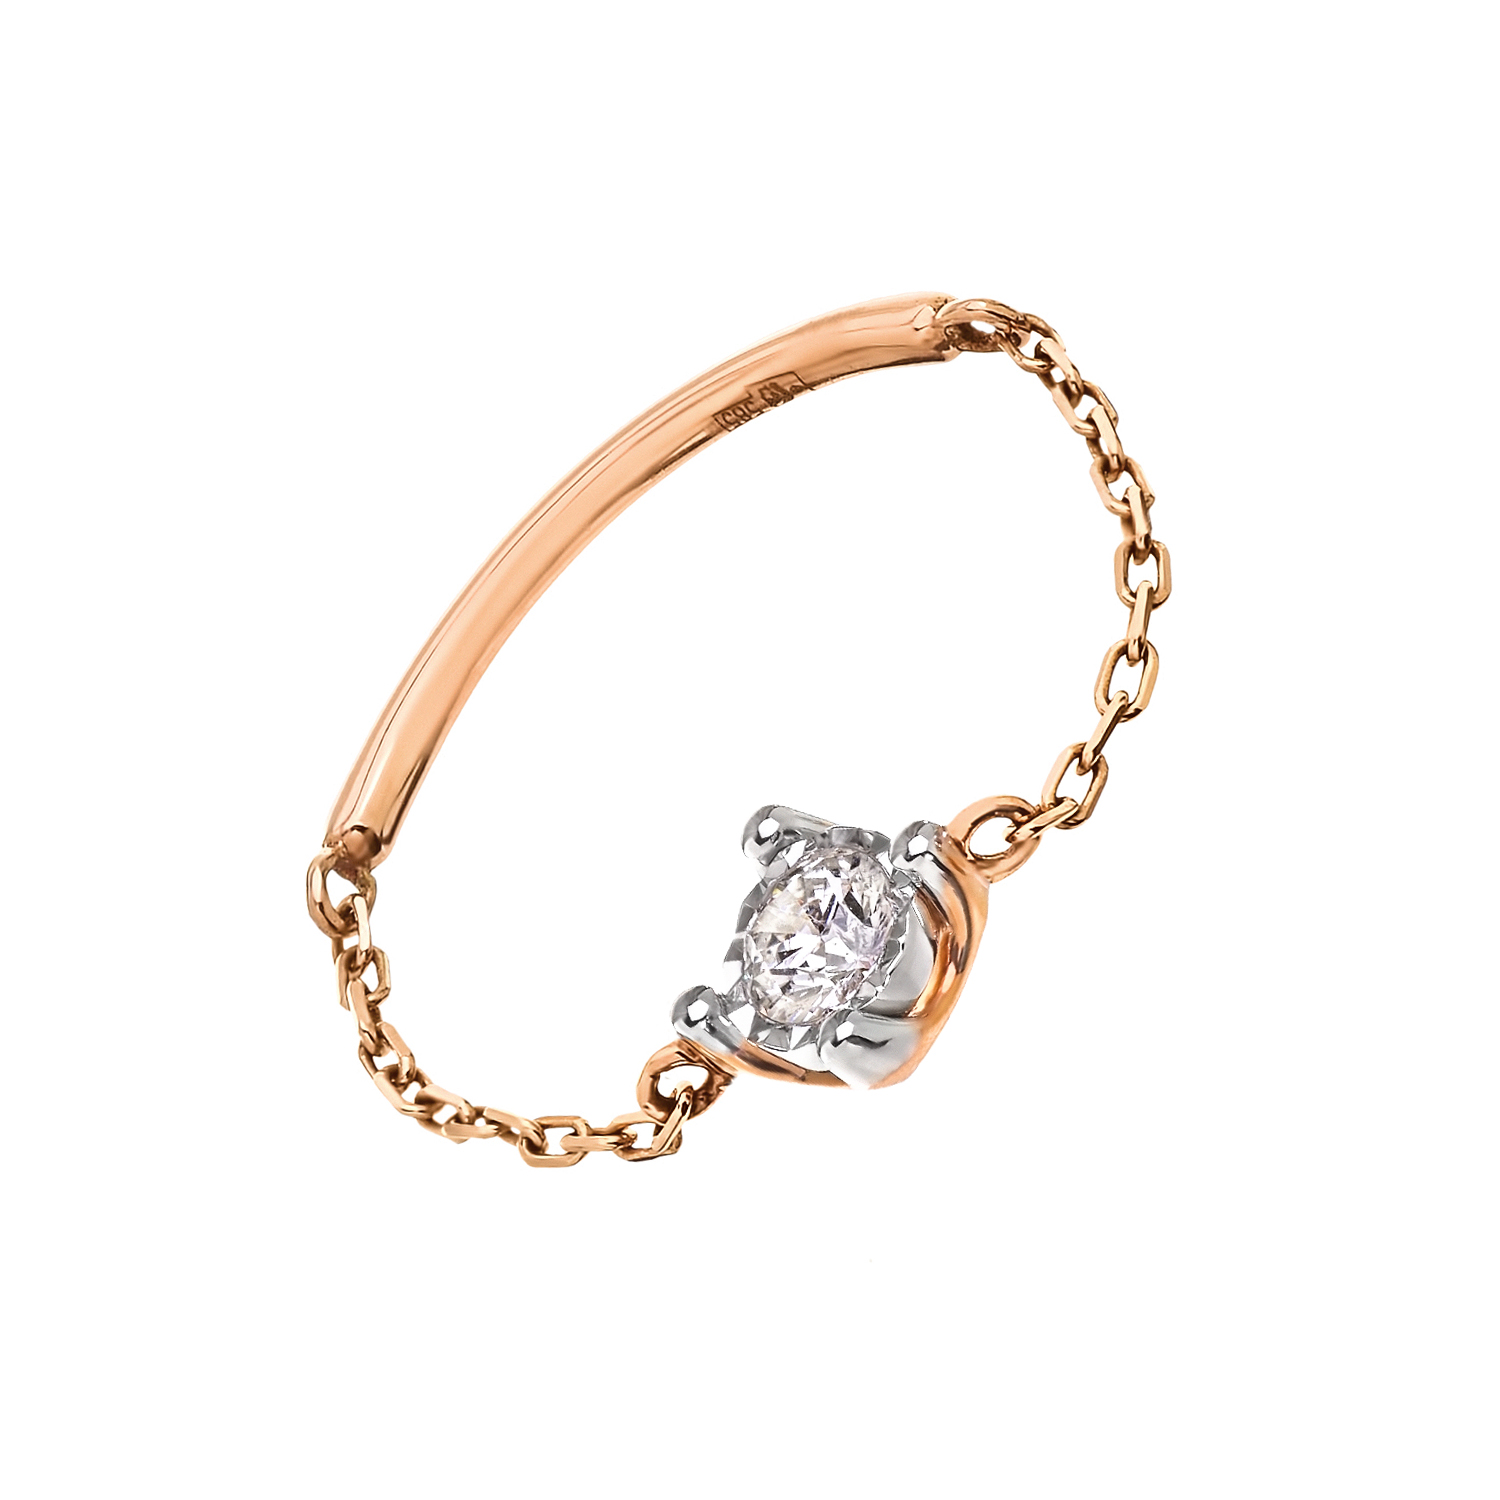 Кольцо на цепи с бриллиантом в розовом золоте от магазина LunaLu